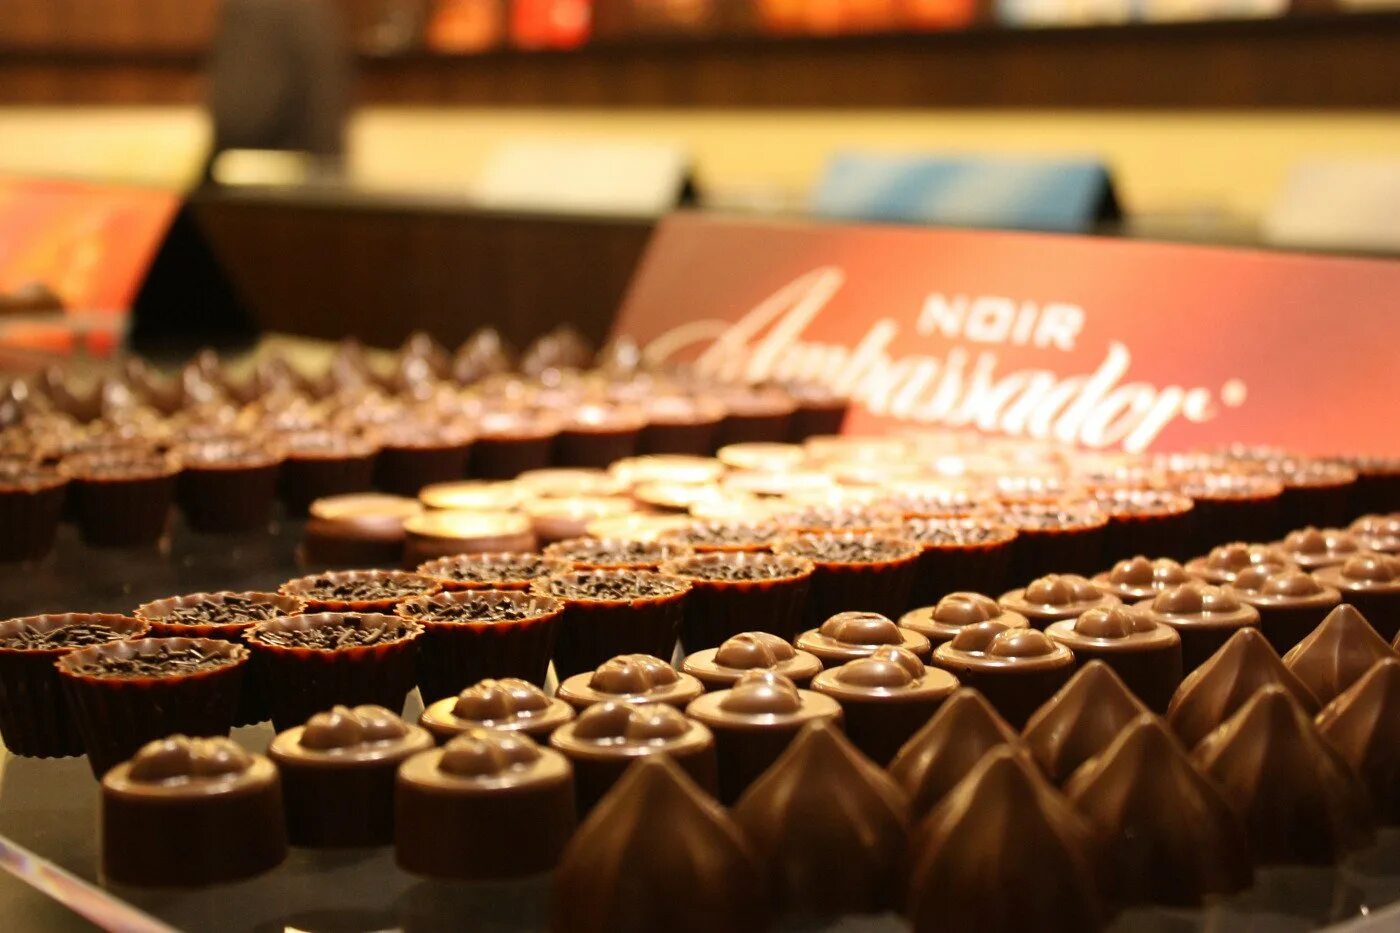 Лучший шоколад в москве. Швейцарский шоколад Cailler. Cailler шоколадная фабрика. Альпрозе шоколадная фабрика Швейцарии. Швейцария шоколадная фабрика Цюрих.